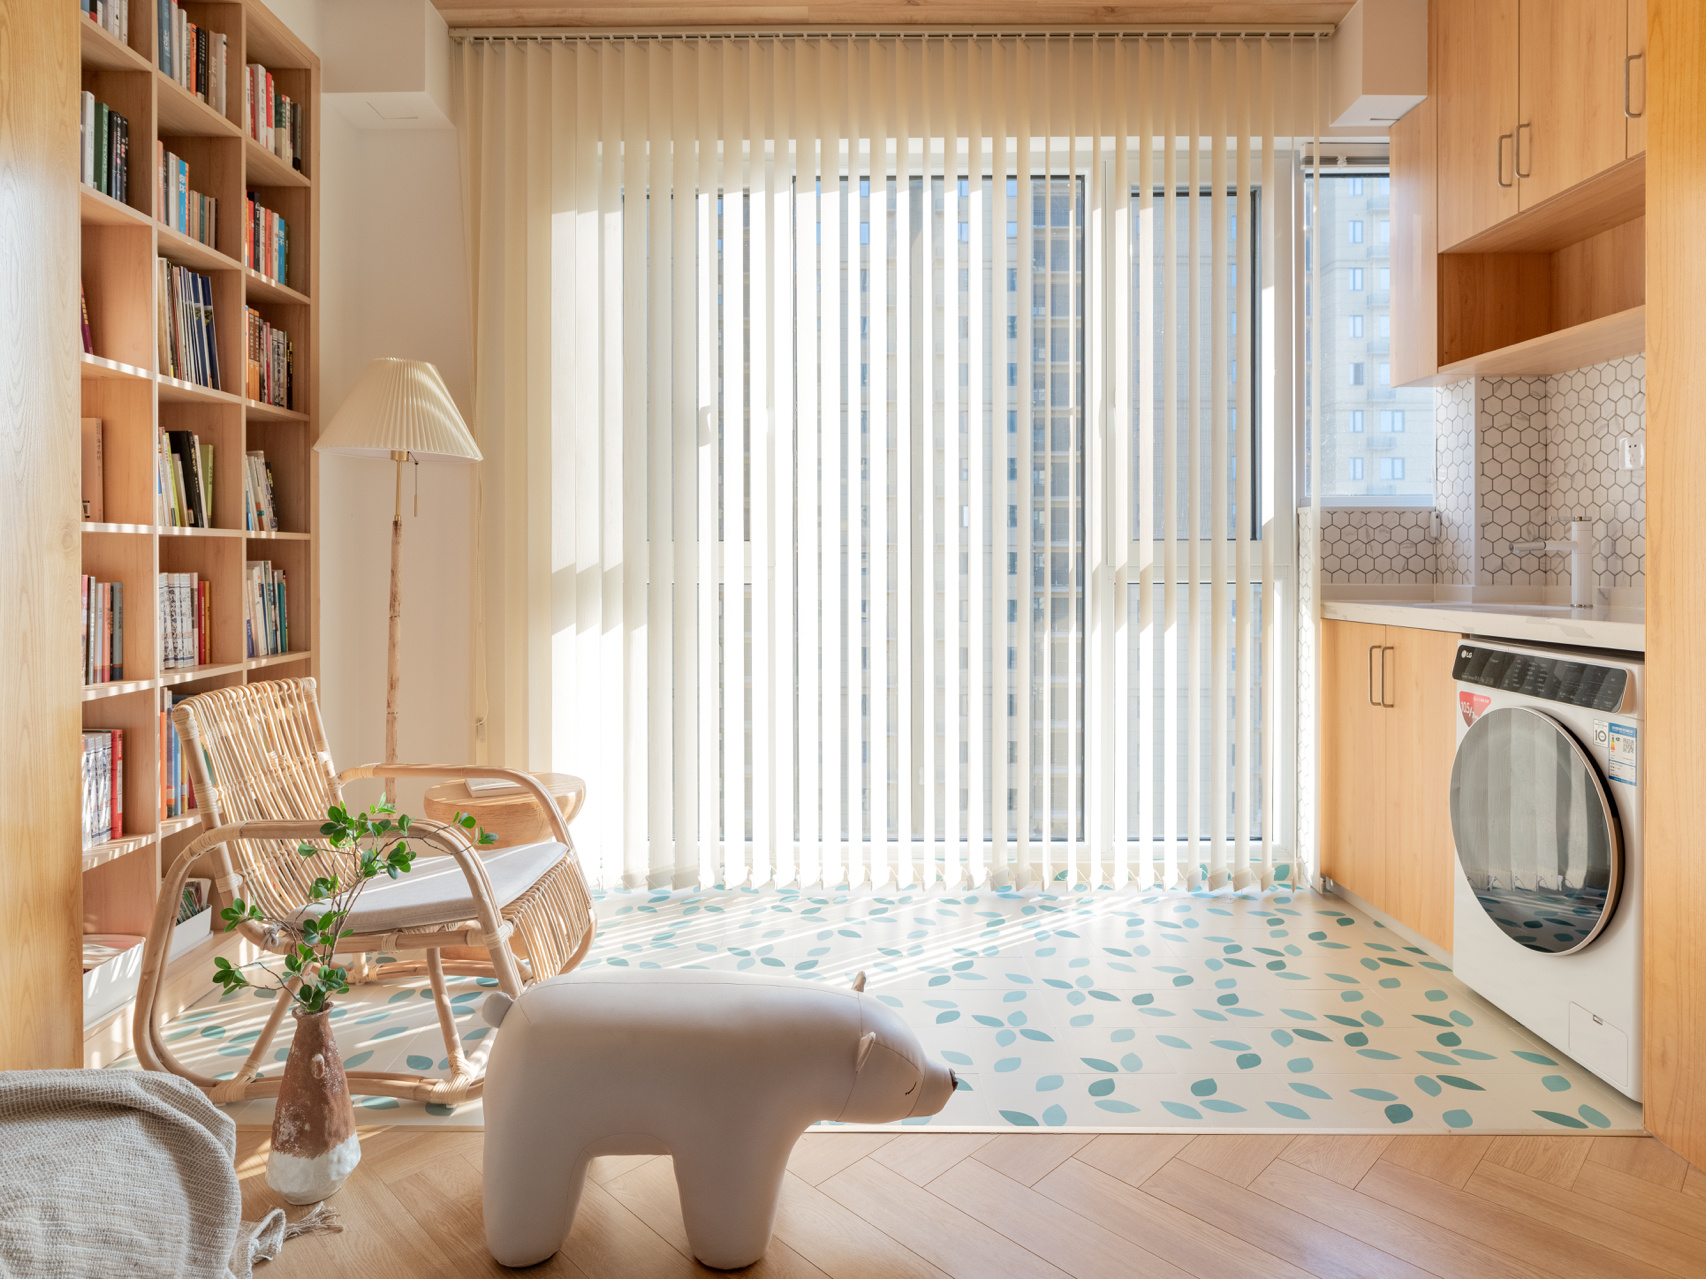 Thích mê căn hộ nhỏ phong cách nội thất Nhật Bản, tuy đơn giản nhưng lại ấm áp vô cùng - Ảnh 4.